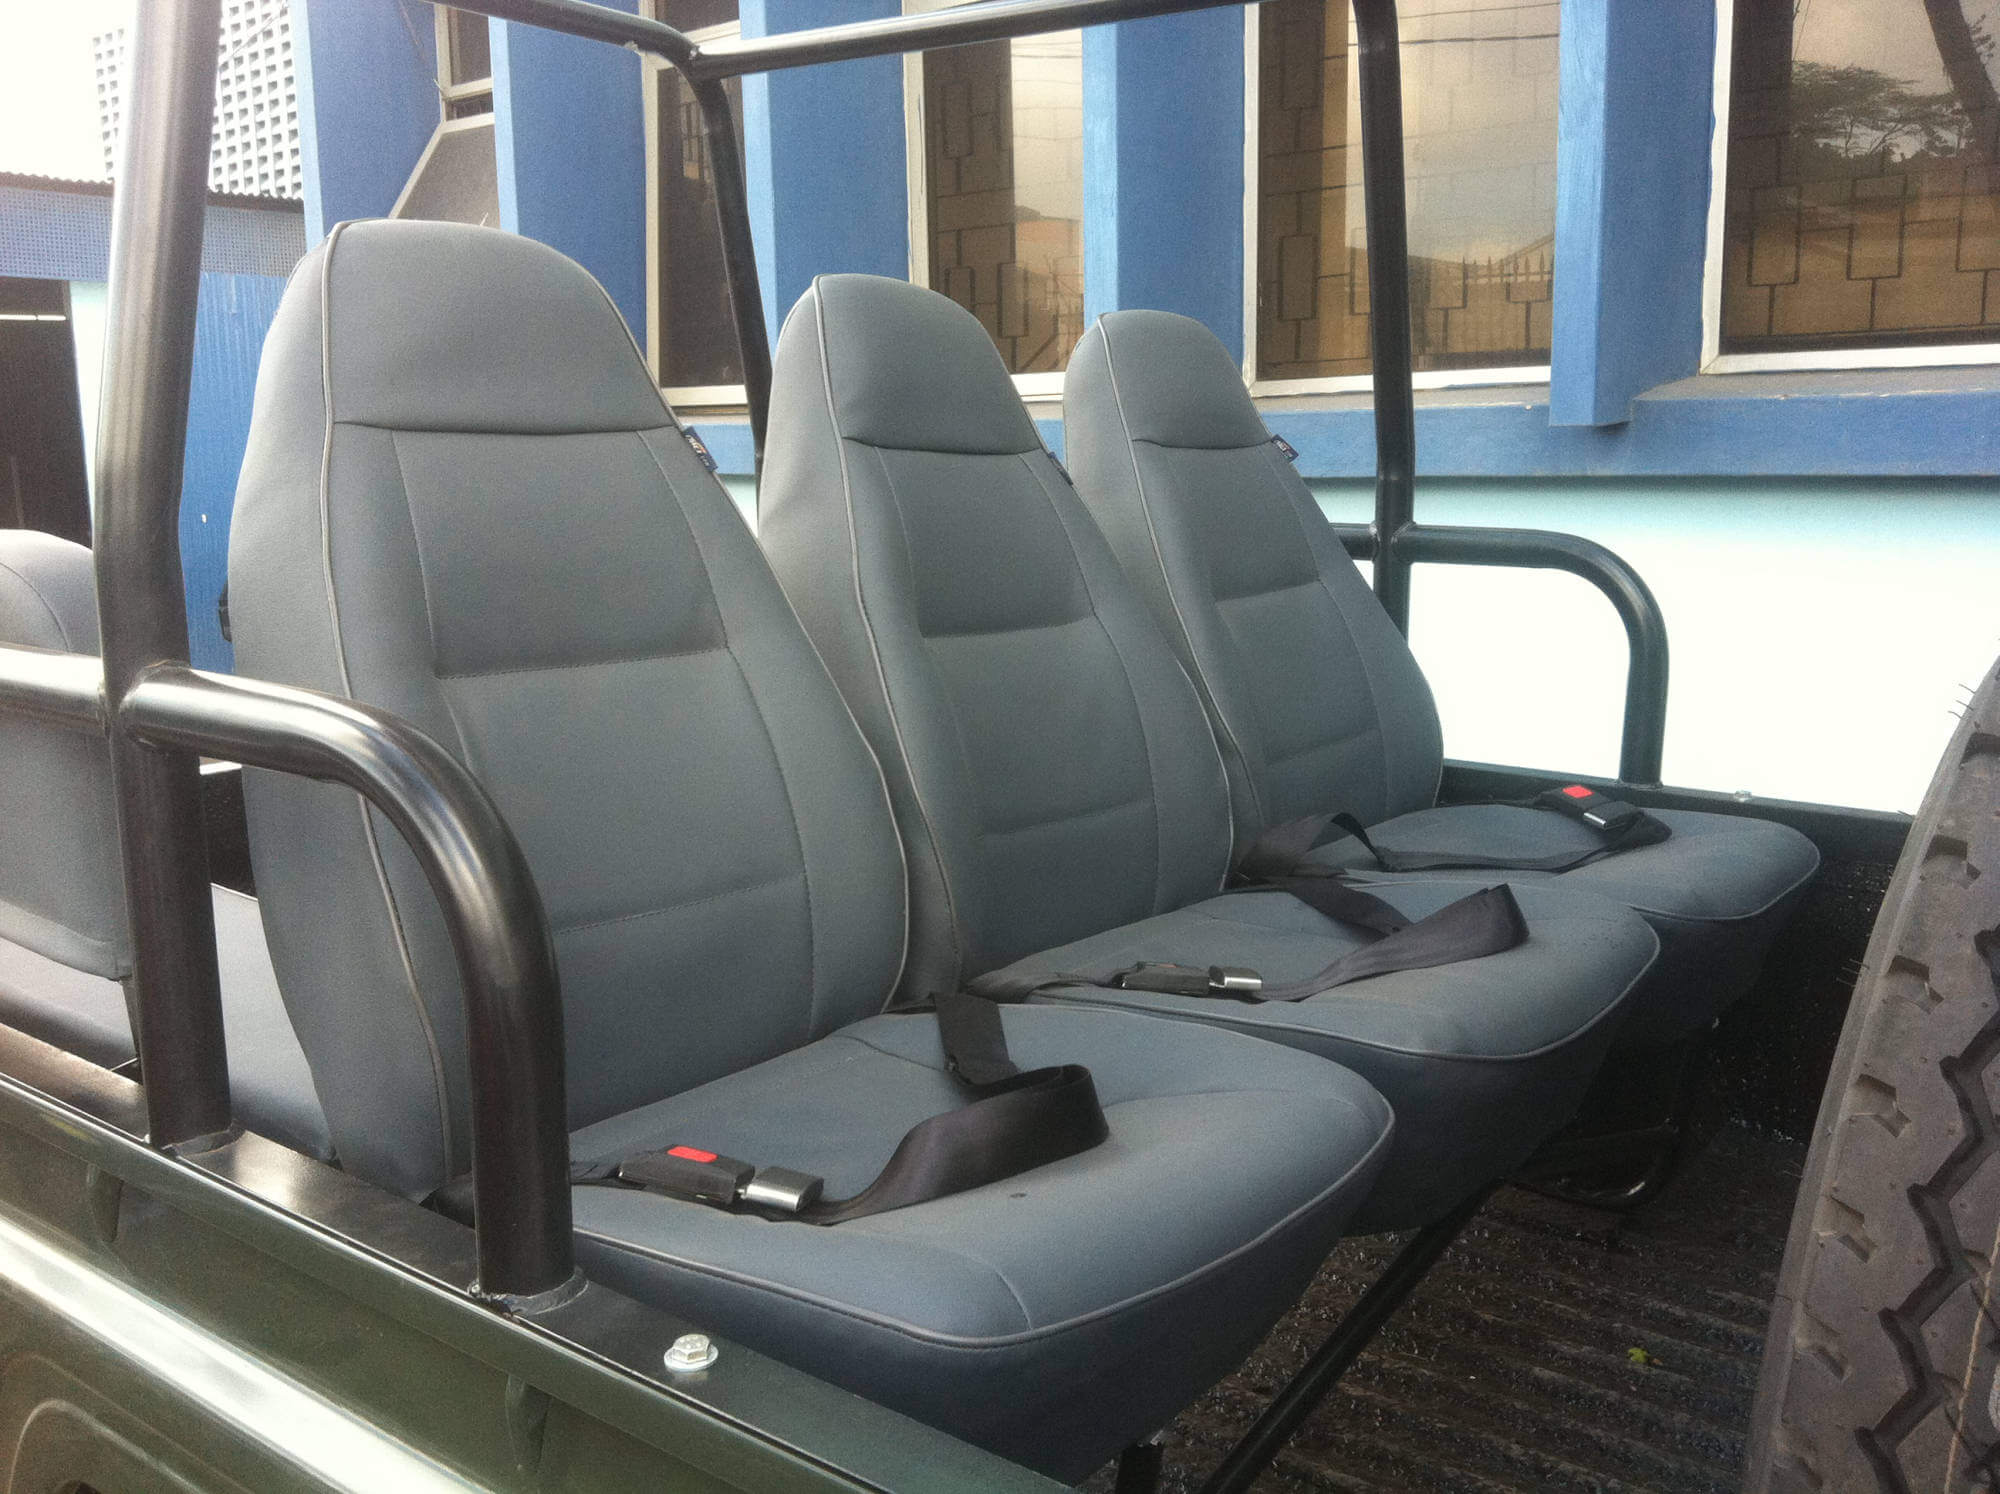 Safari land cruiser seats